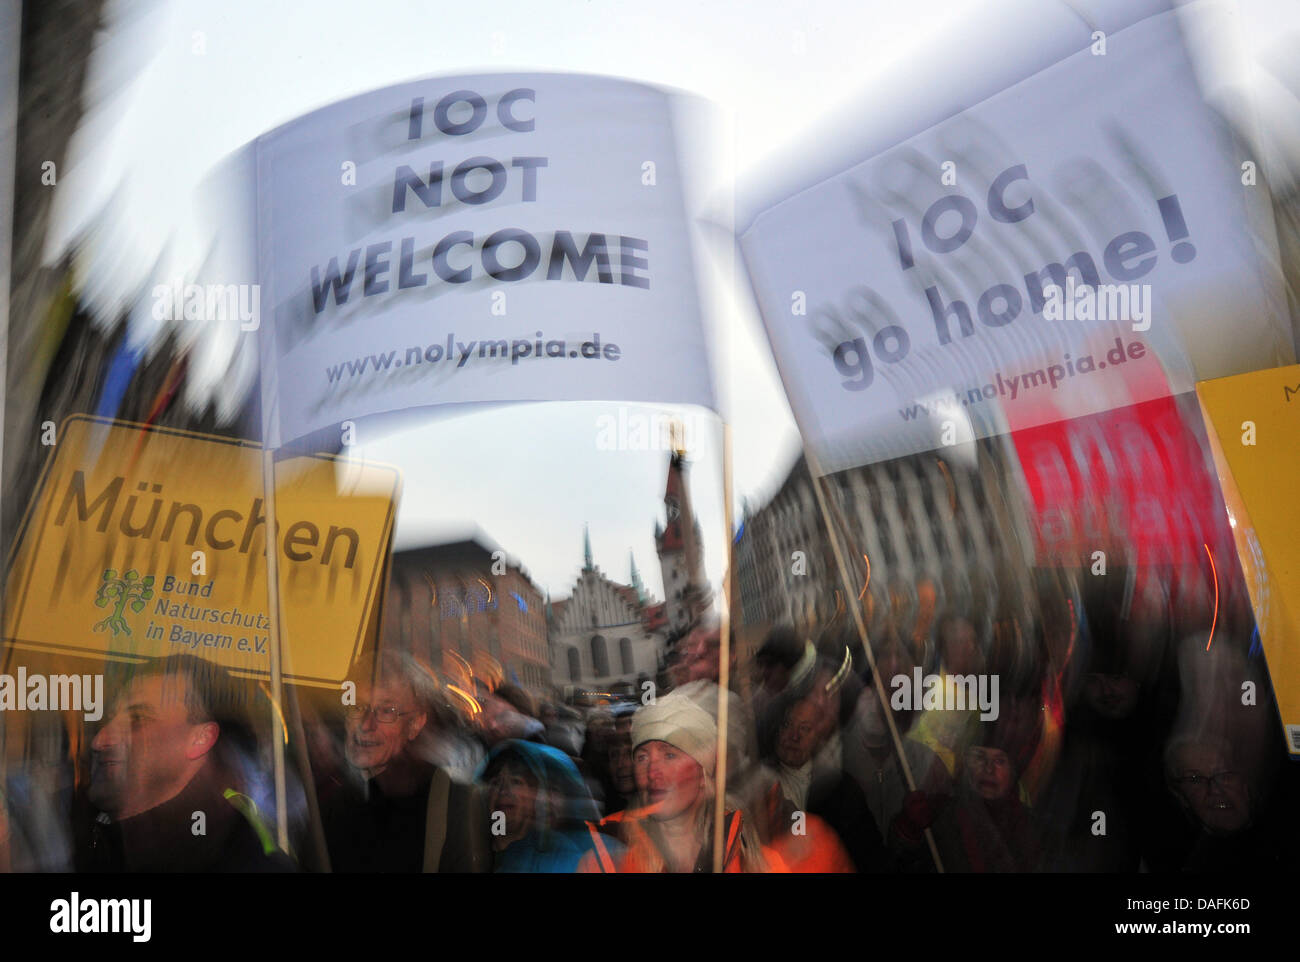 Quelque 200 personnes protestent contre la tenue des Jeux Olympiques de Munich en 2018 à Munich, Allemagne, 01 mars 2011. Commission d'évaluation du CIO évalue actuellement l'admissibilité de Munich à l'hôte des Jeux Olympiques d'hiver de 2018. Photo : PETER KNEFFEL Banque D'Images